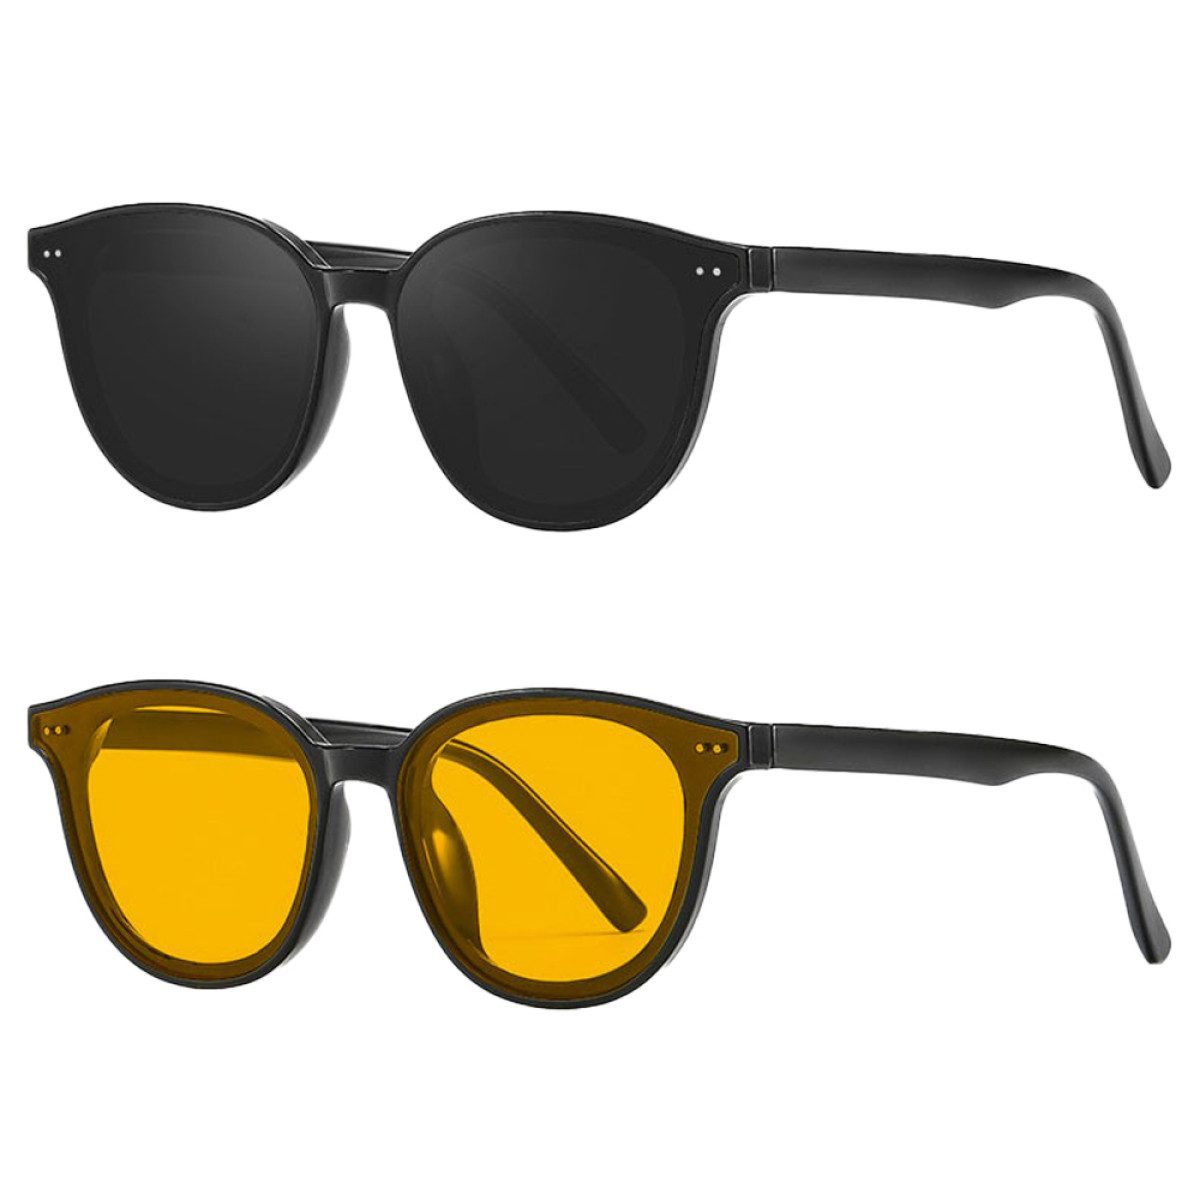 Fivejoy Sonnenbrille Vintage Sonnenbrille Polarisiert UV400 Schutz Pilotenbrille 2 Stück